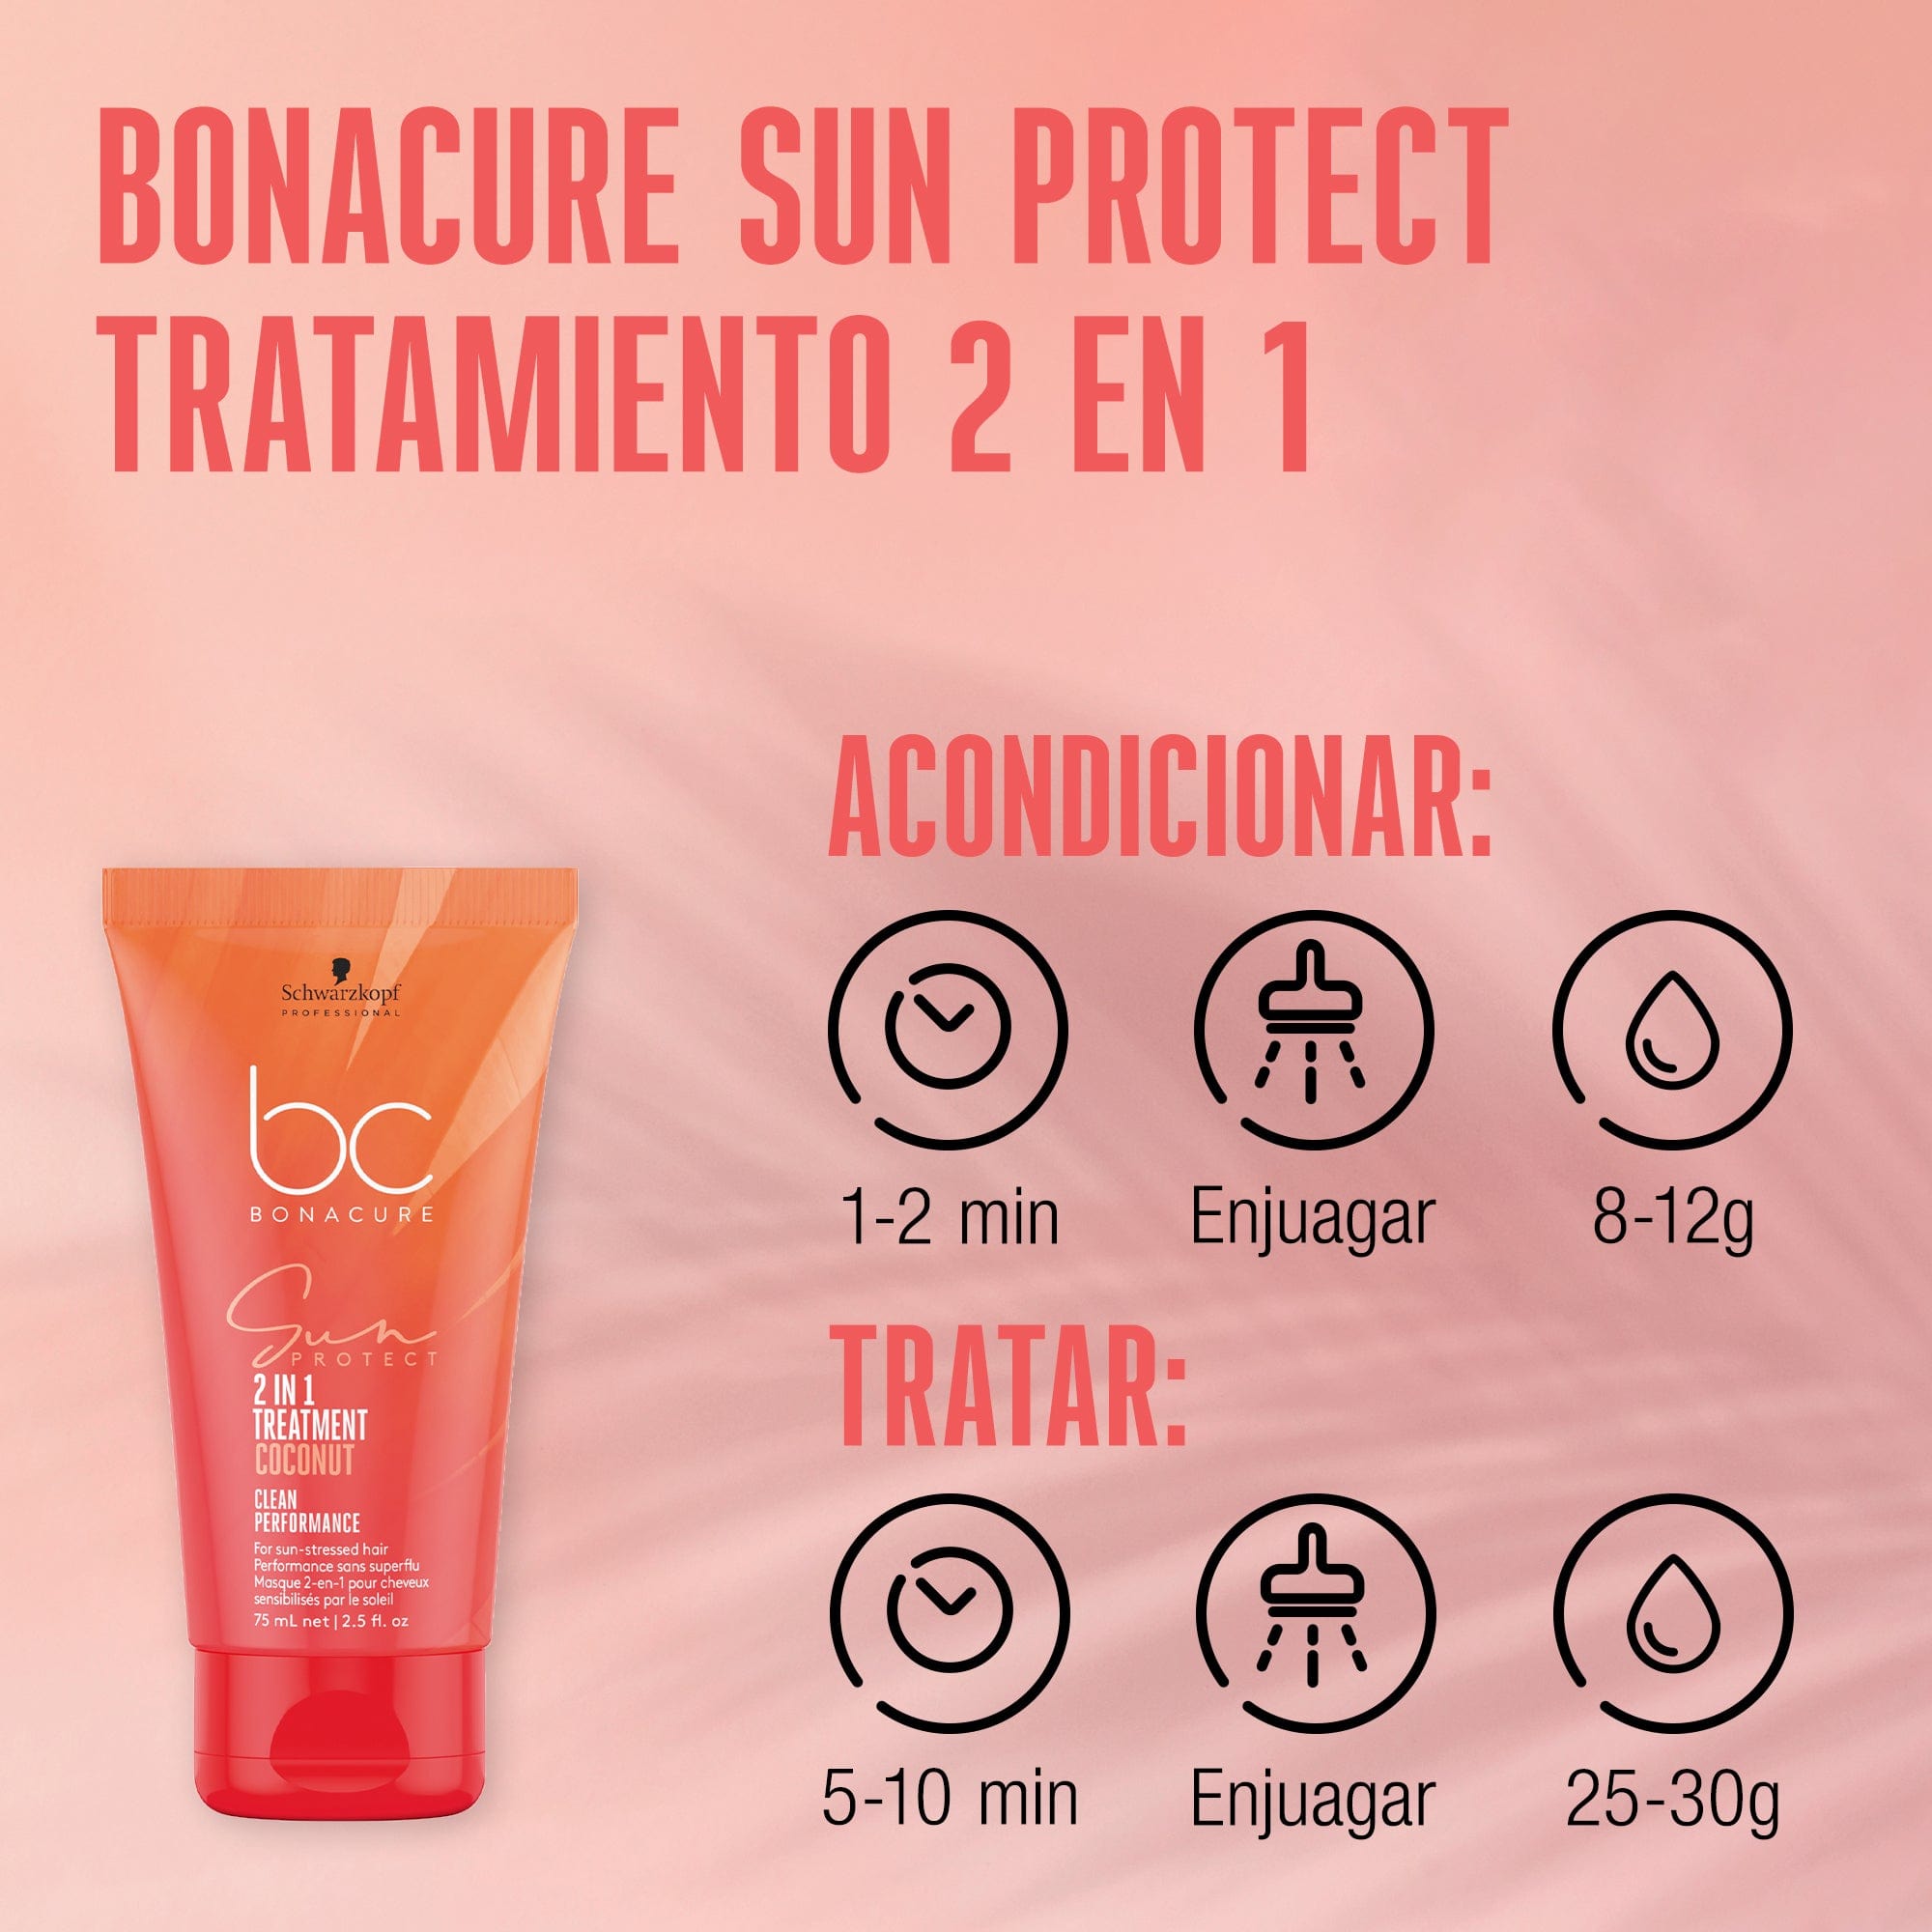 Bonacure Tratamiento Bonacure Sun Protect Tratamiento 2en1 150ml Roberta Beauty Club Tienda Online Productos de Peluqueria